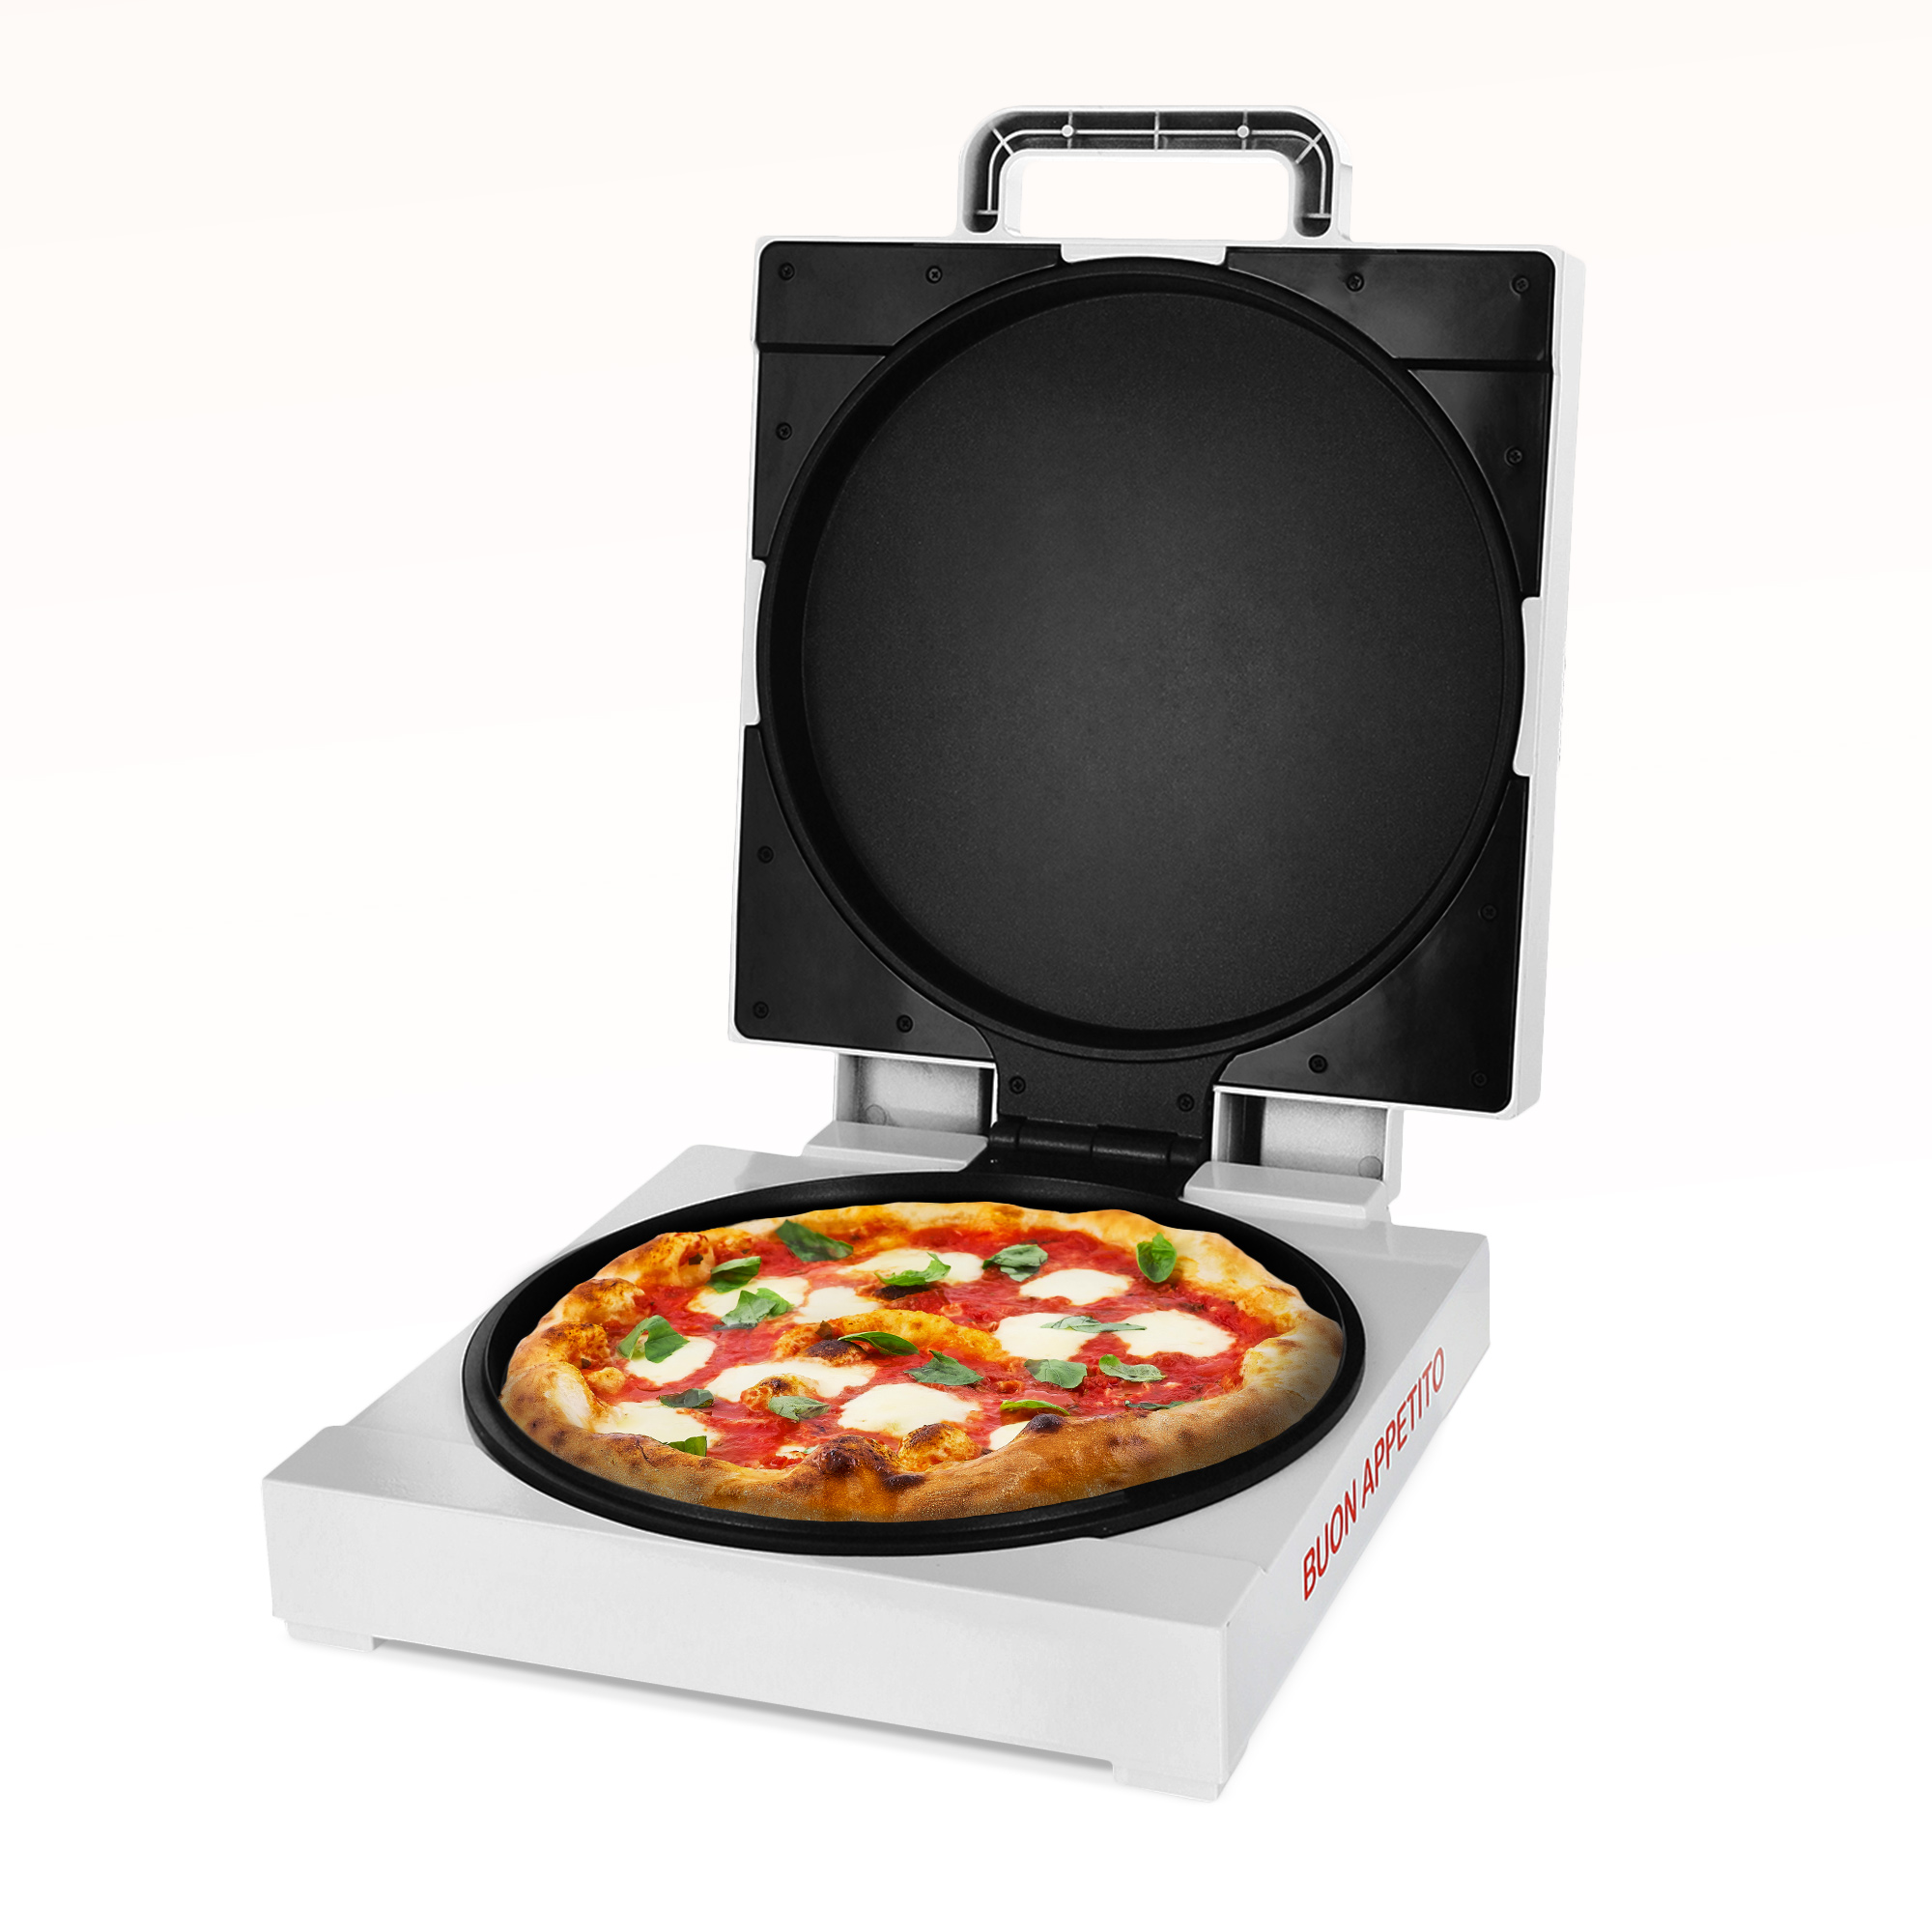 Mobiler Pizzaofen für zuhause in Pizzabox Design, Mini Backofen in Pizzakarton Optik, Pizzabackofen zum Pizza selber machen mit Antihaftbeschichtung 